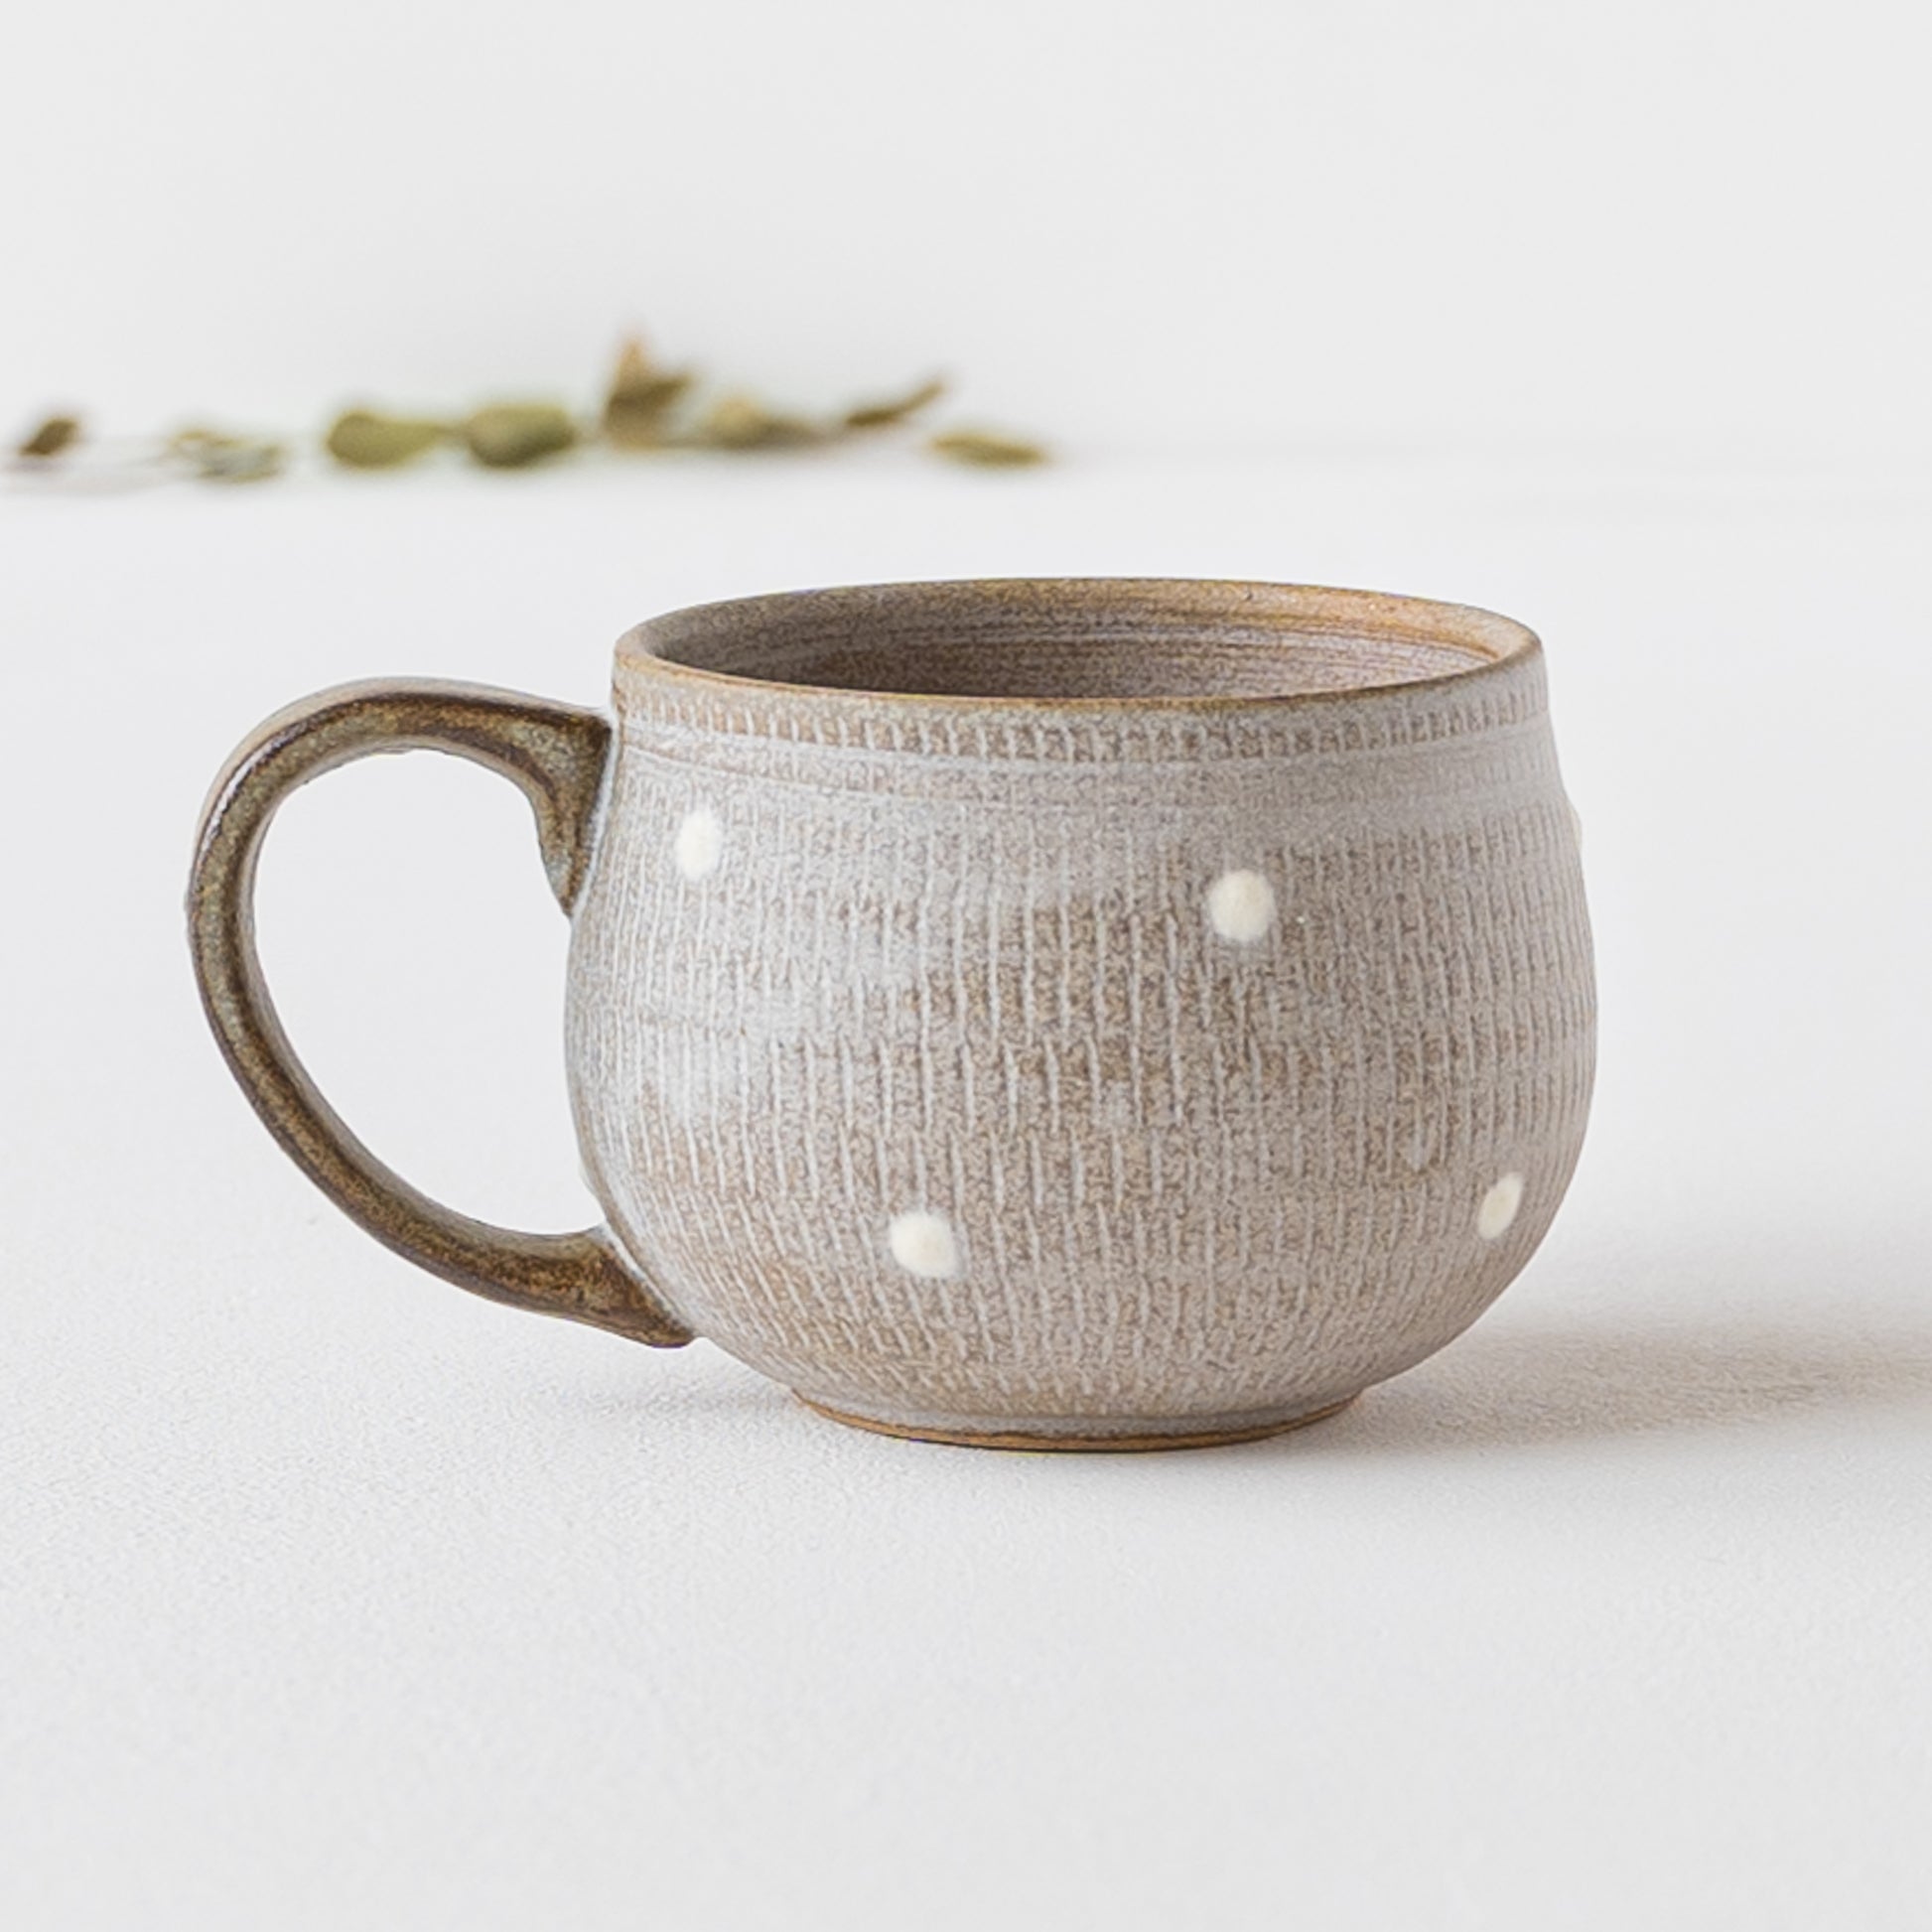 マットなグレーと白いドットがおしゃれで可愛い小石原焼翁明窯元のコーヒーカップ